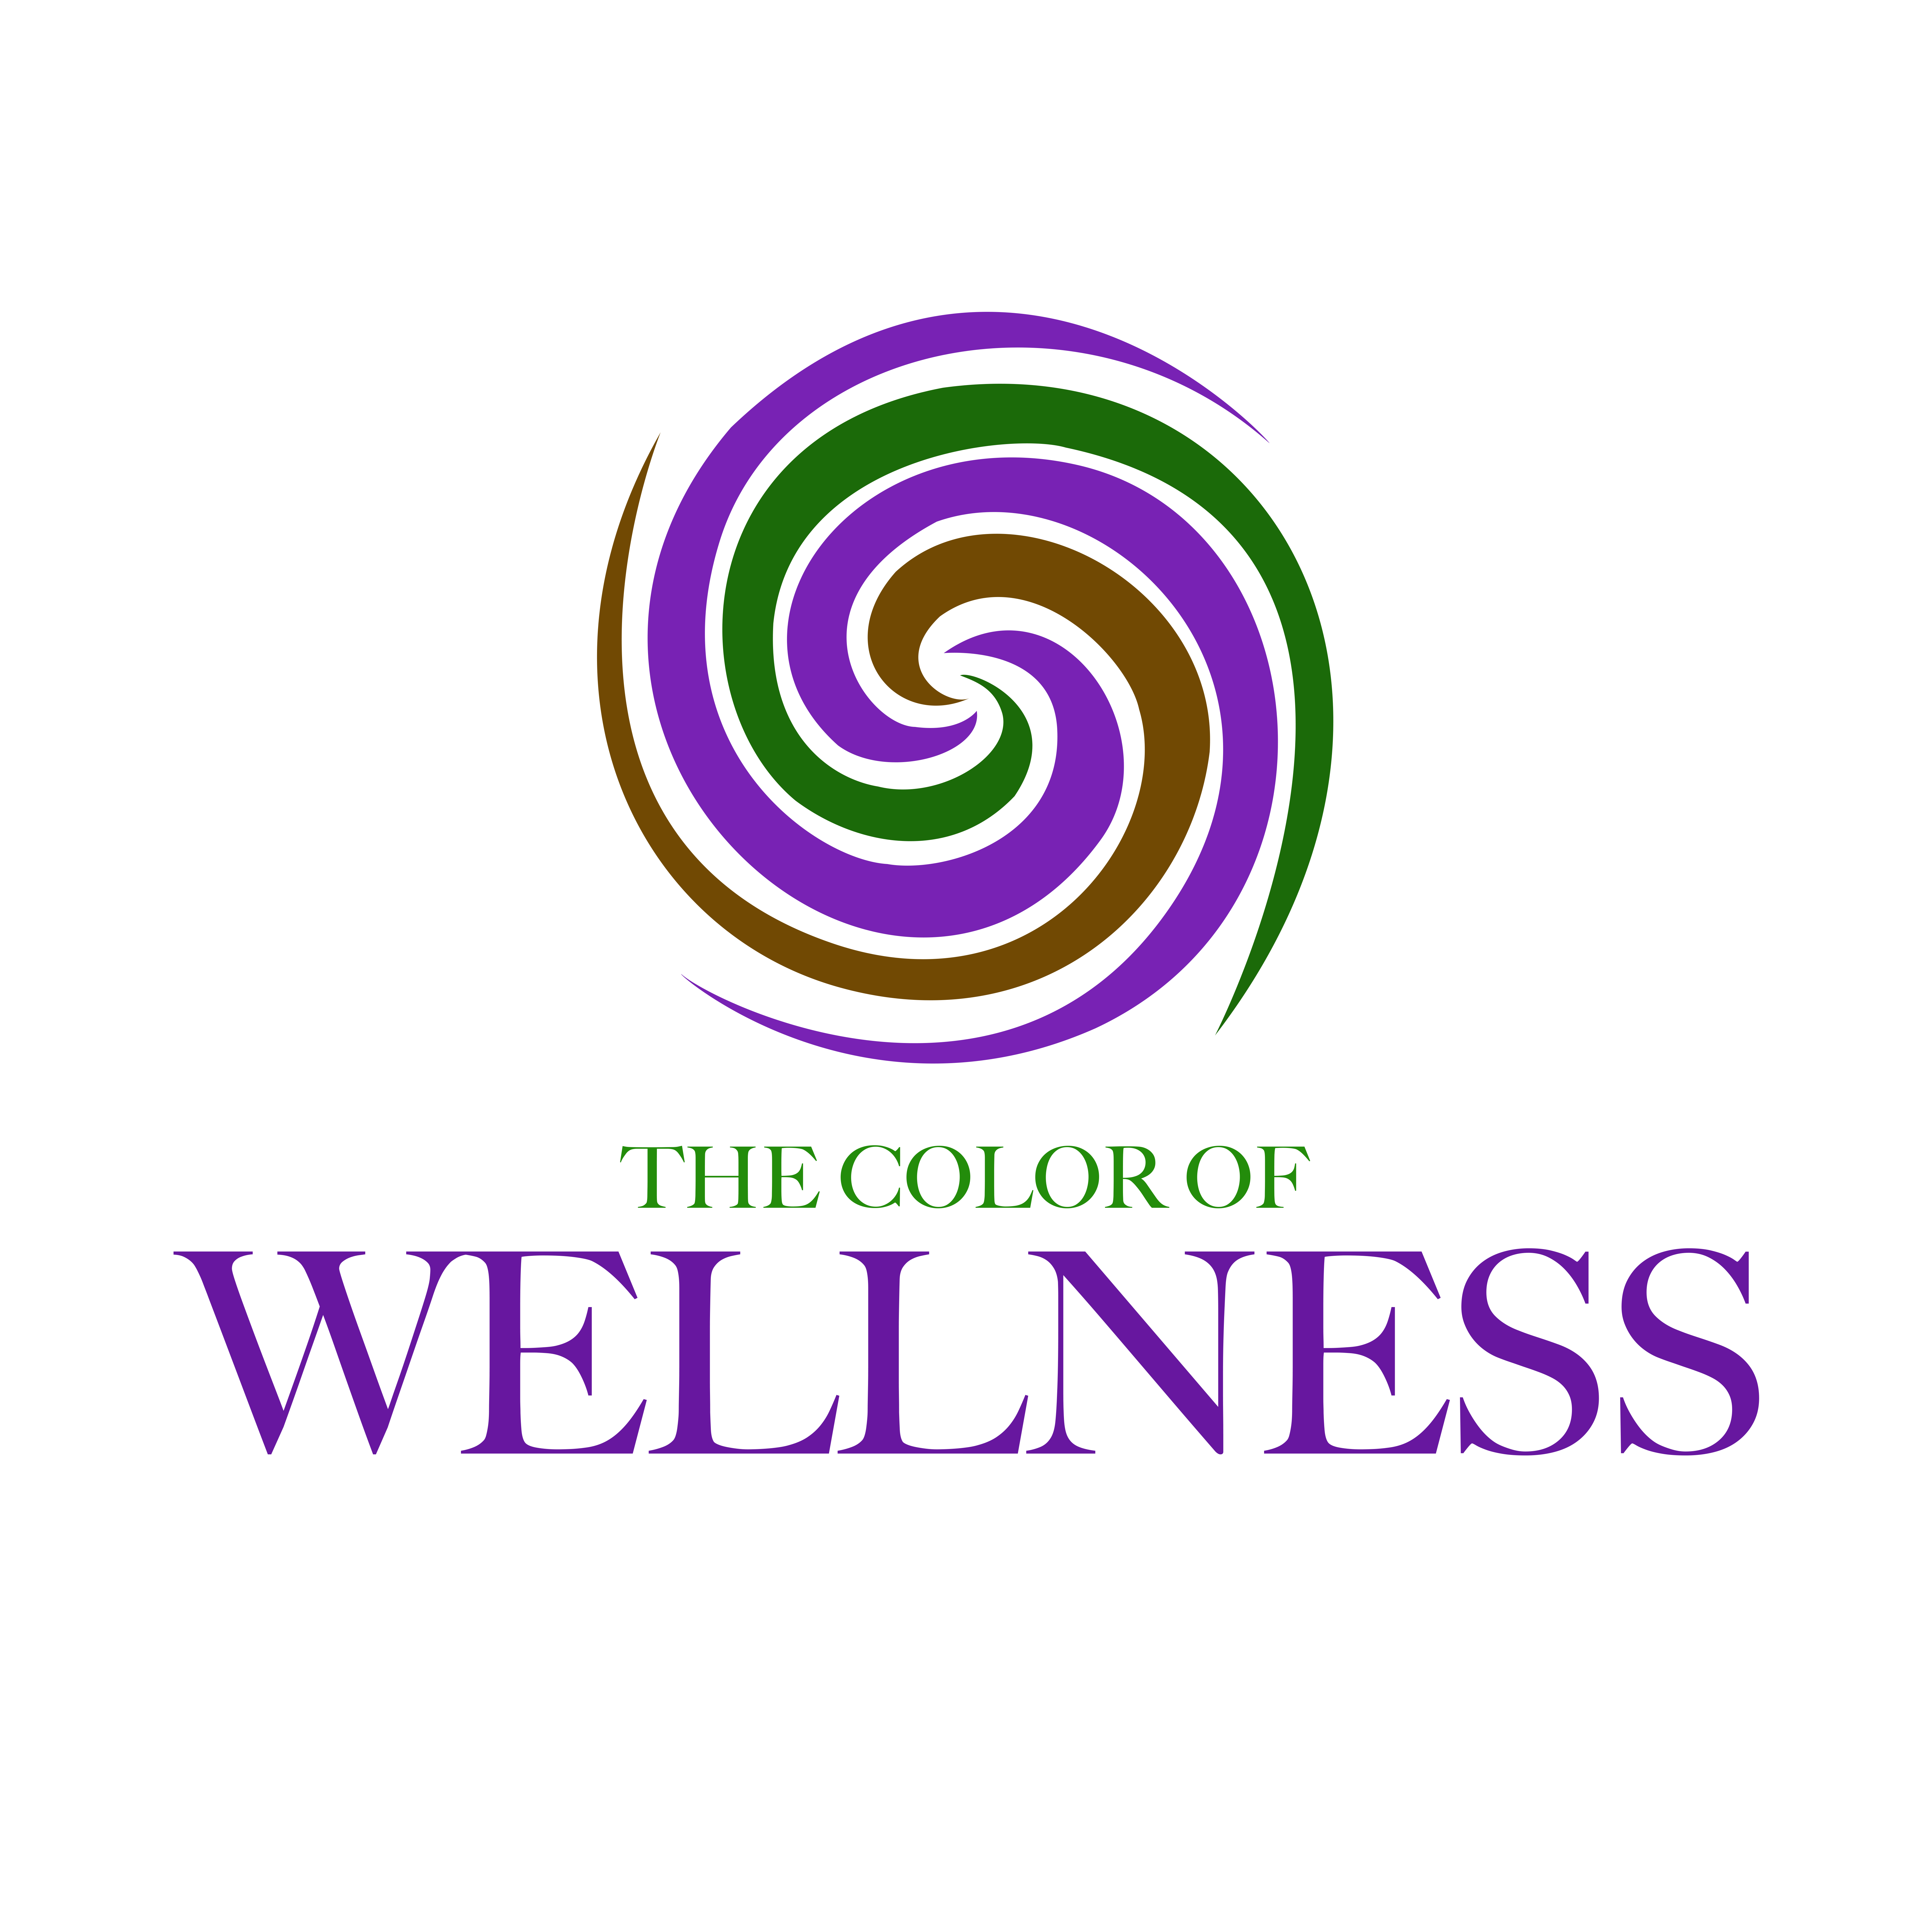 New Wellness website